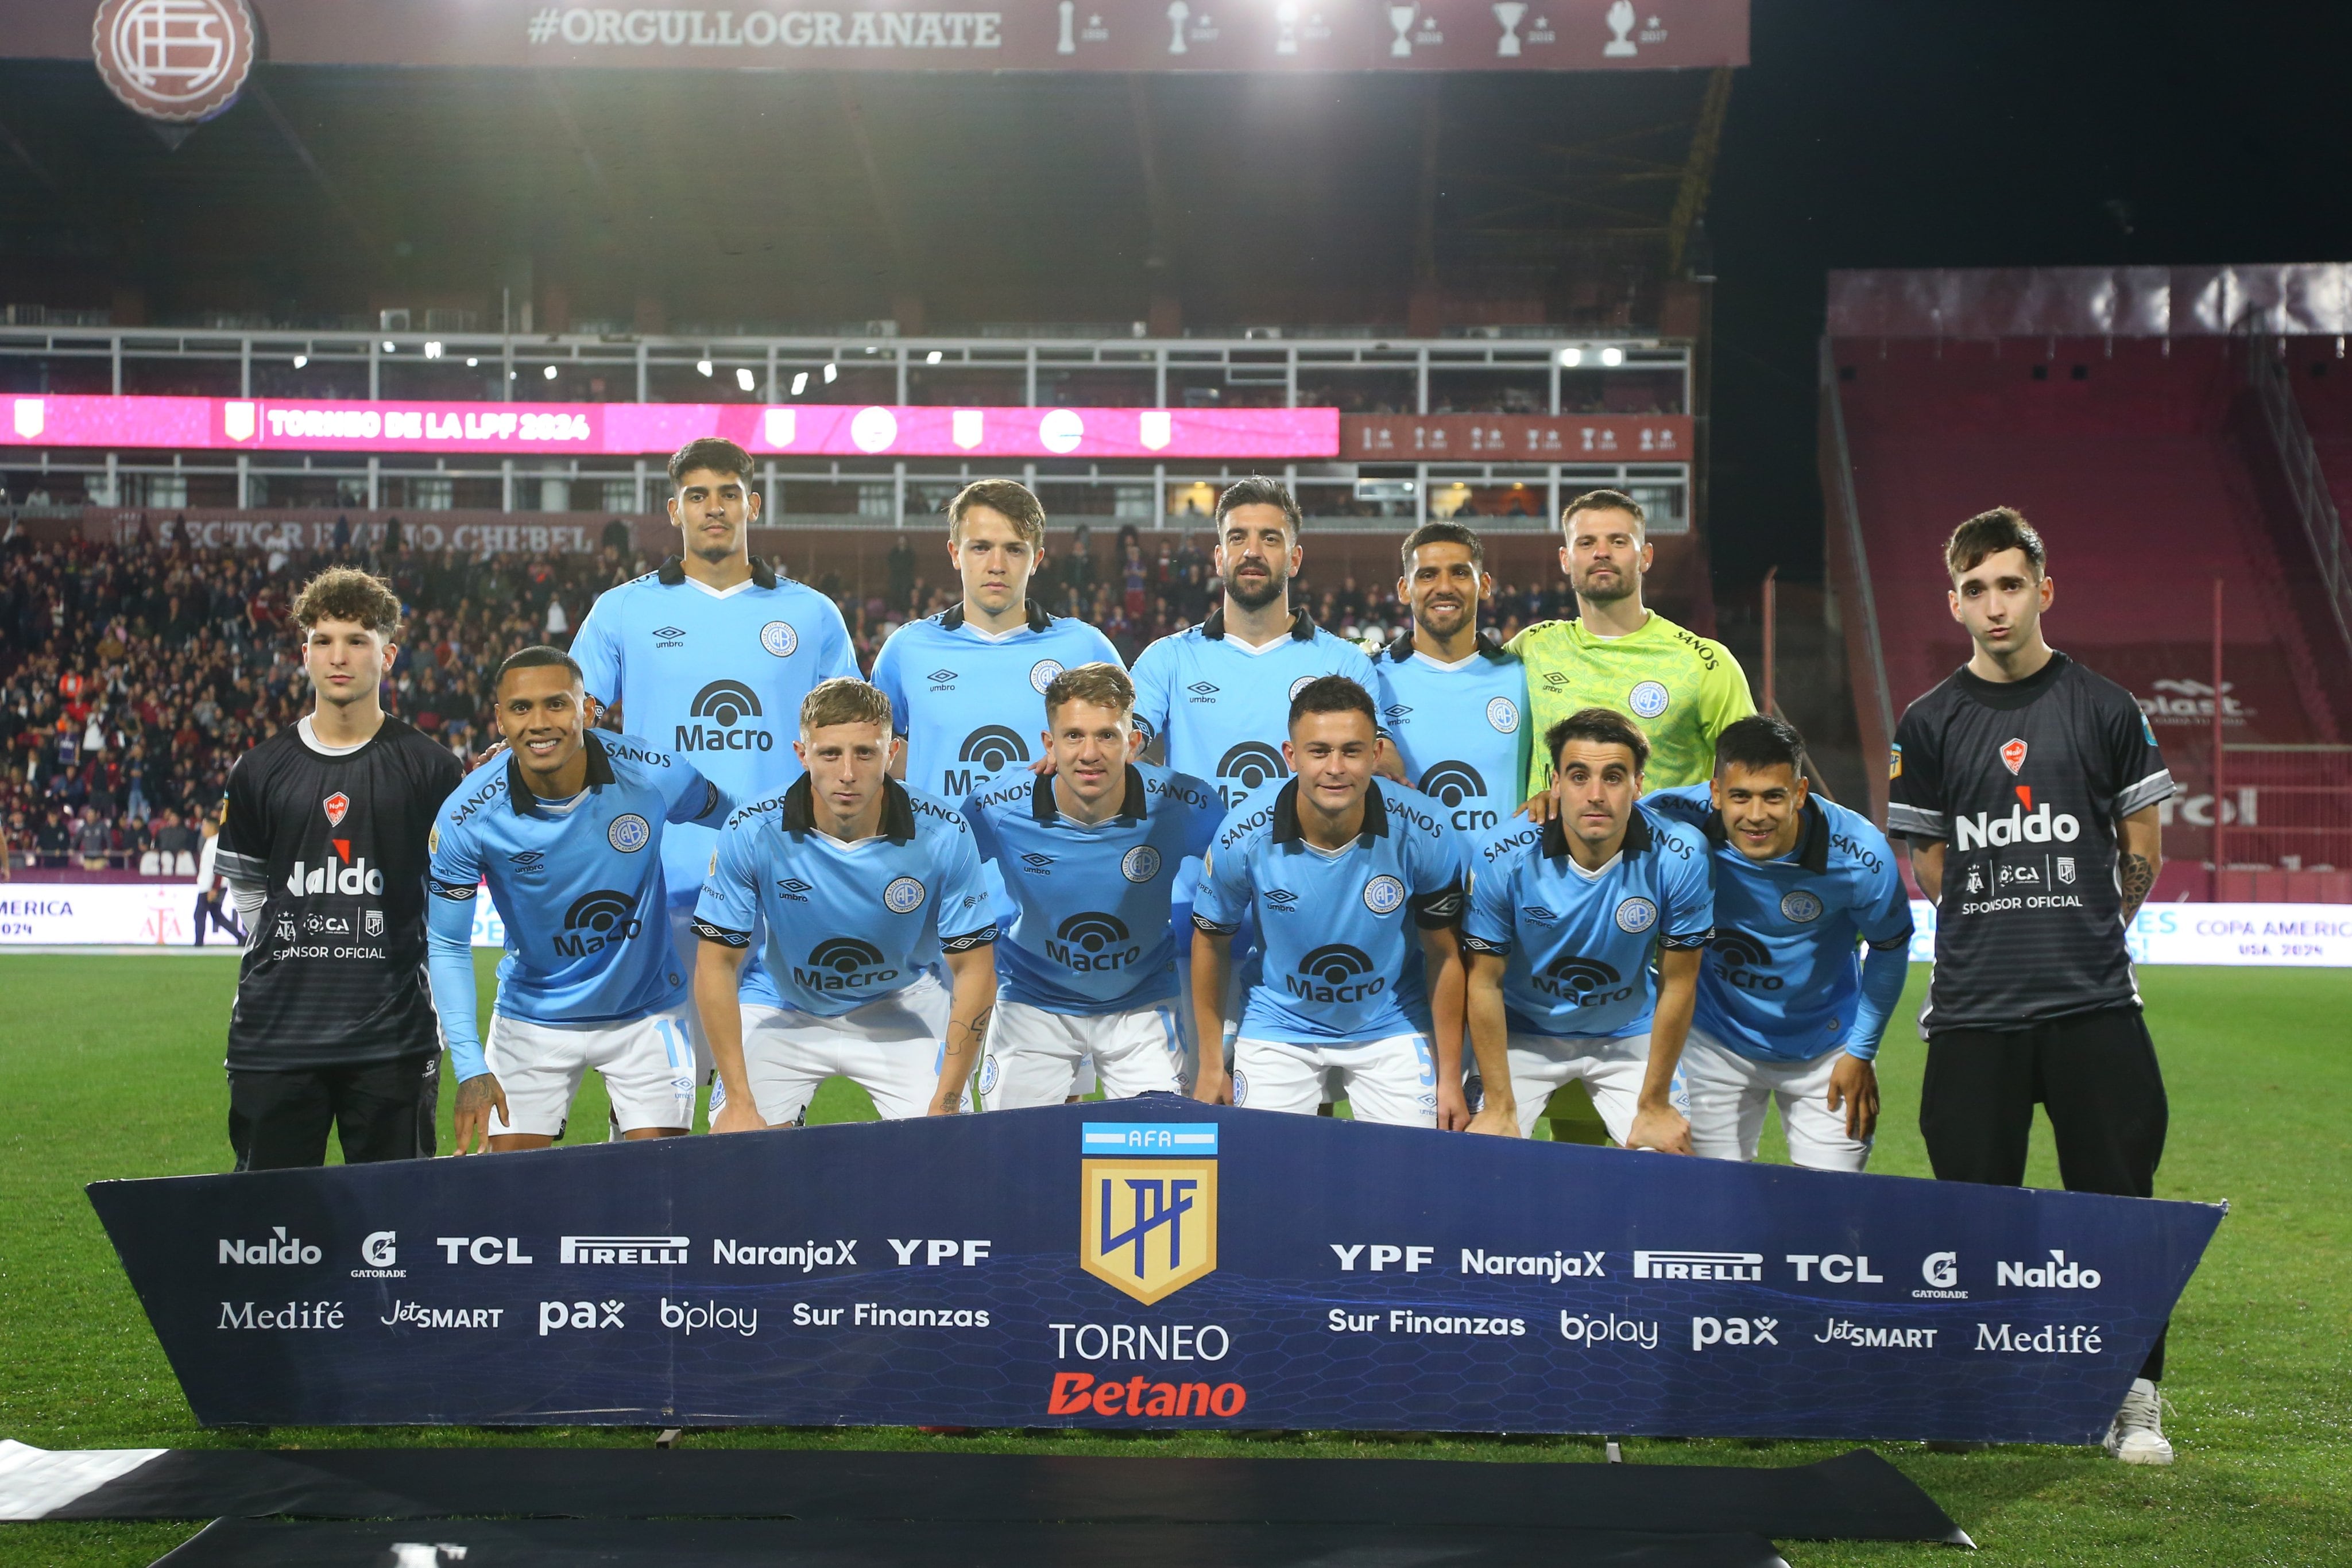 La formación de Belgrano que visitó a Lanús por la fecha 7 del Torneo de la Liga Profesional